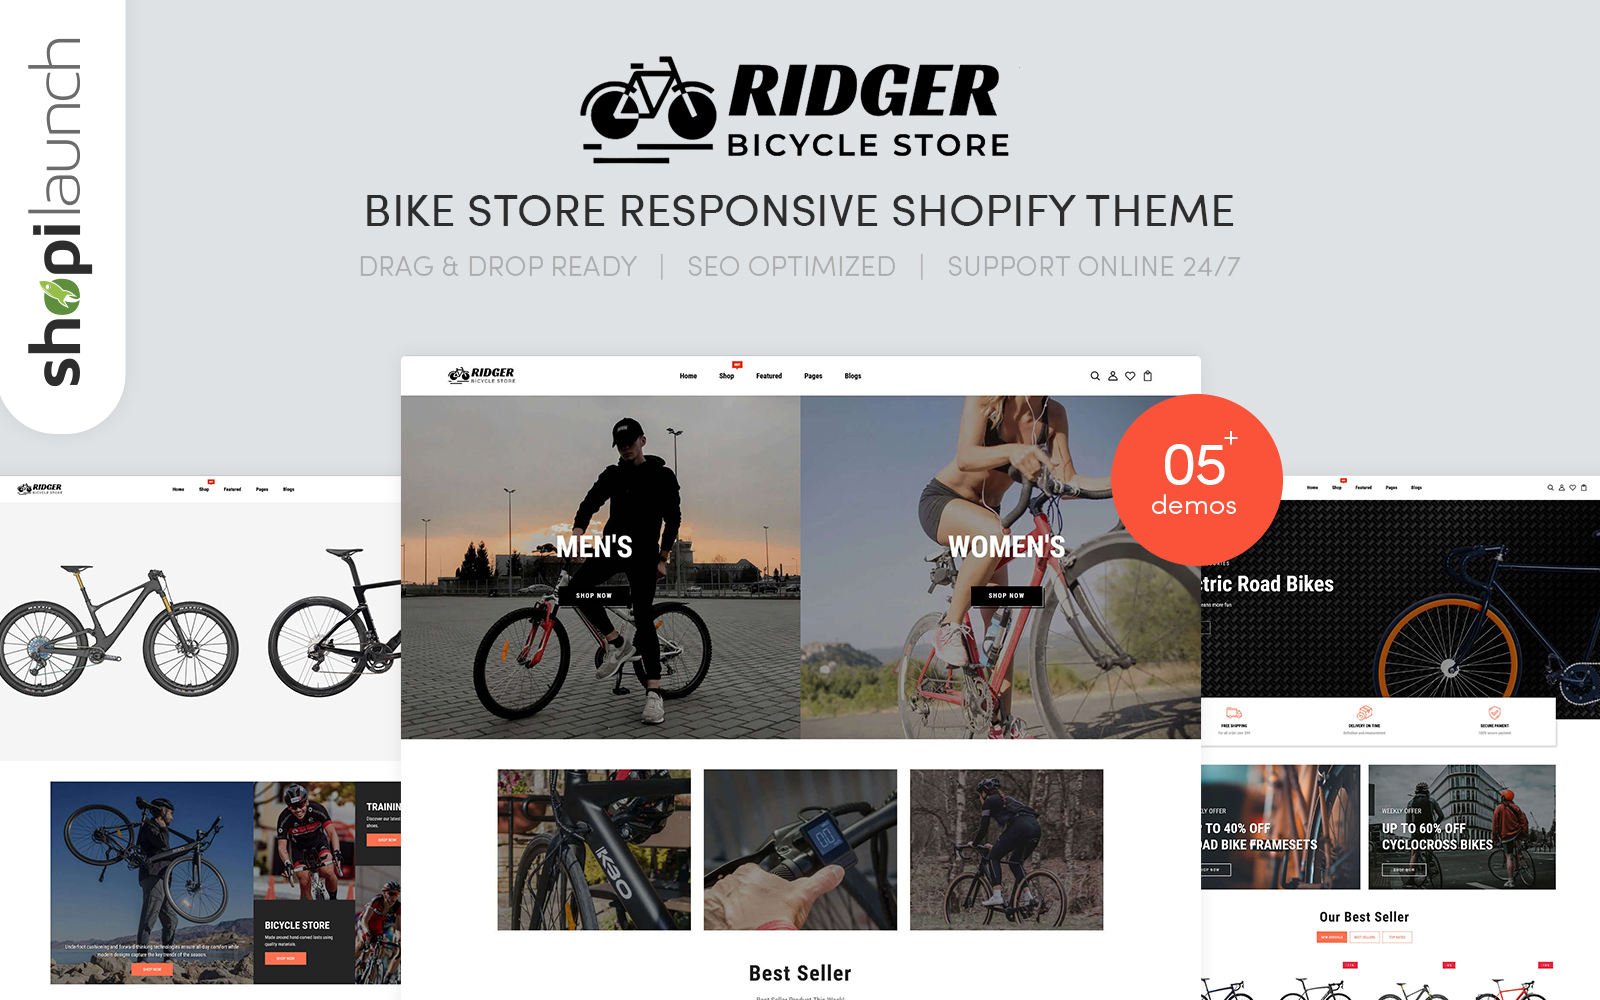 Ridger - Bike Store Responsive Shopify Theme